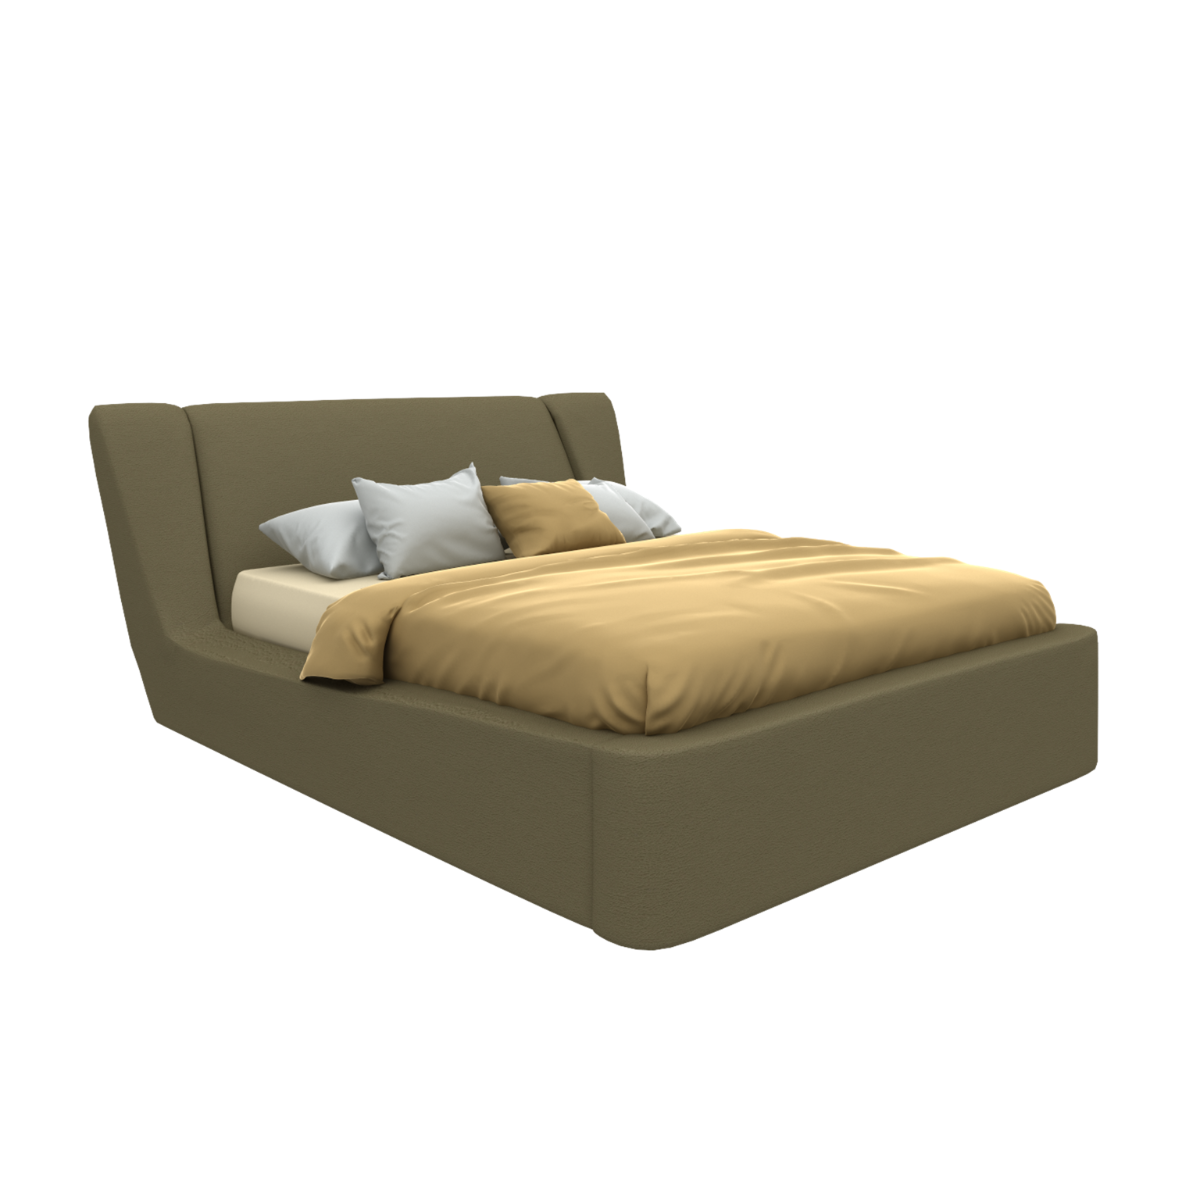 ชุดห้องนอน เตียงสั่งทำ รุ่น Cira-SB Design Square